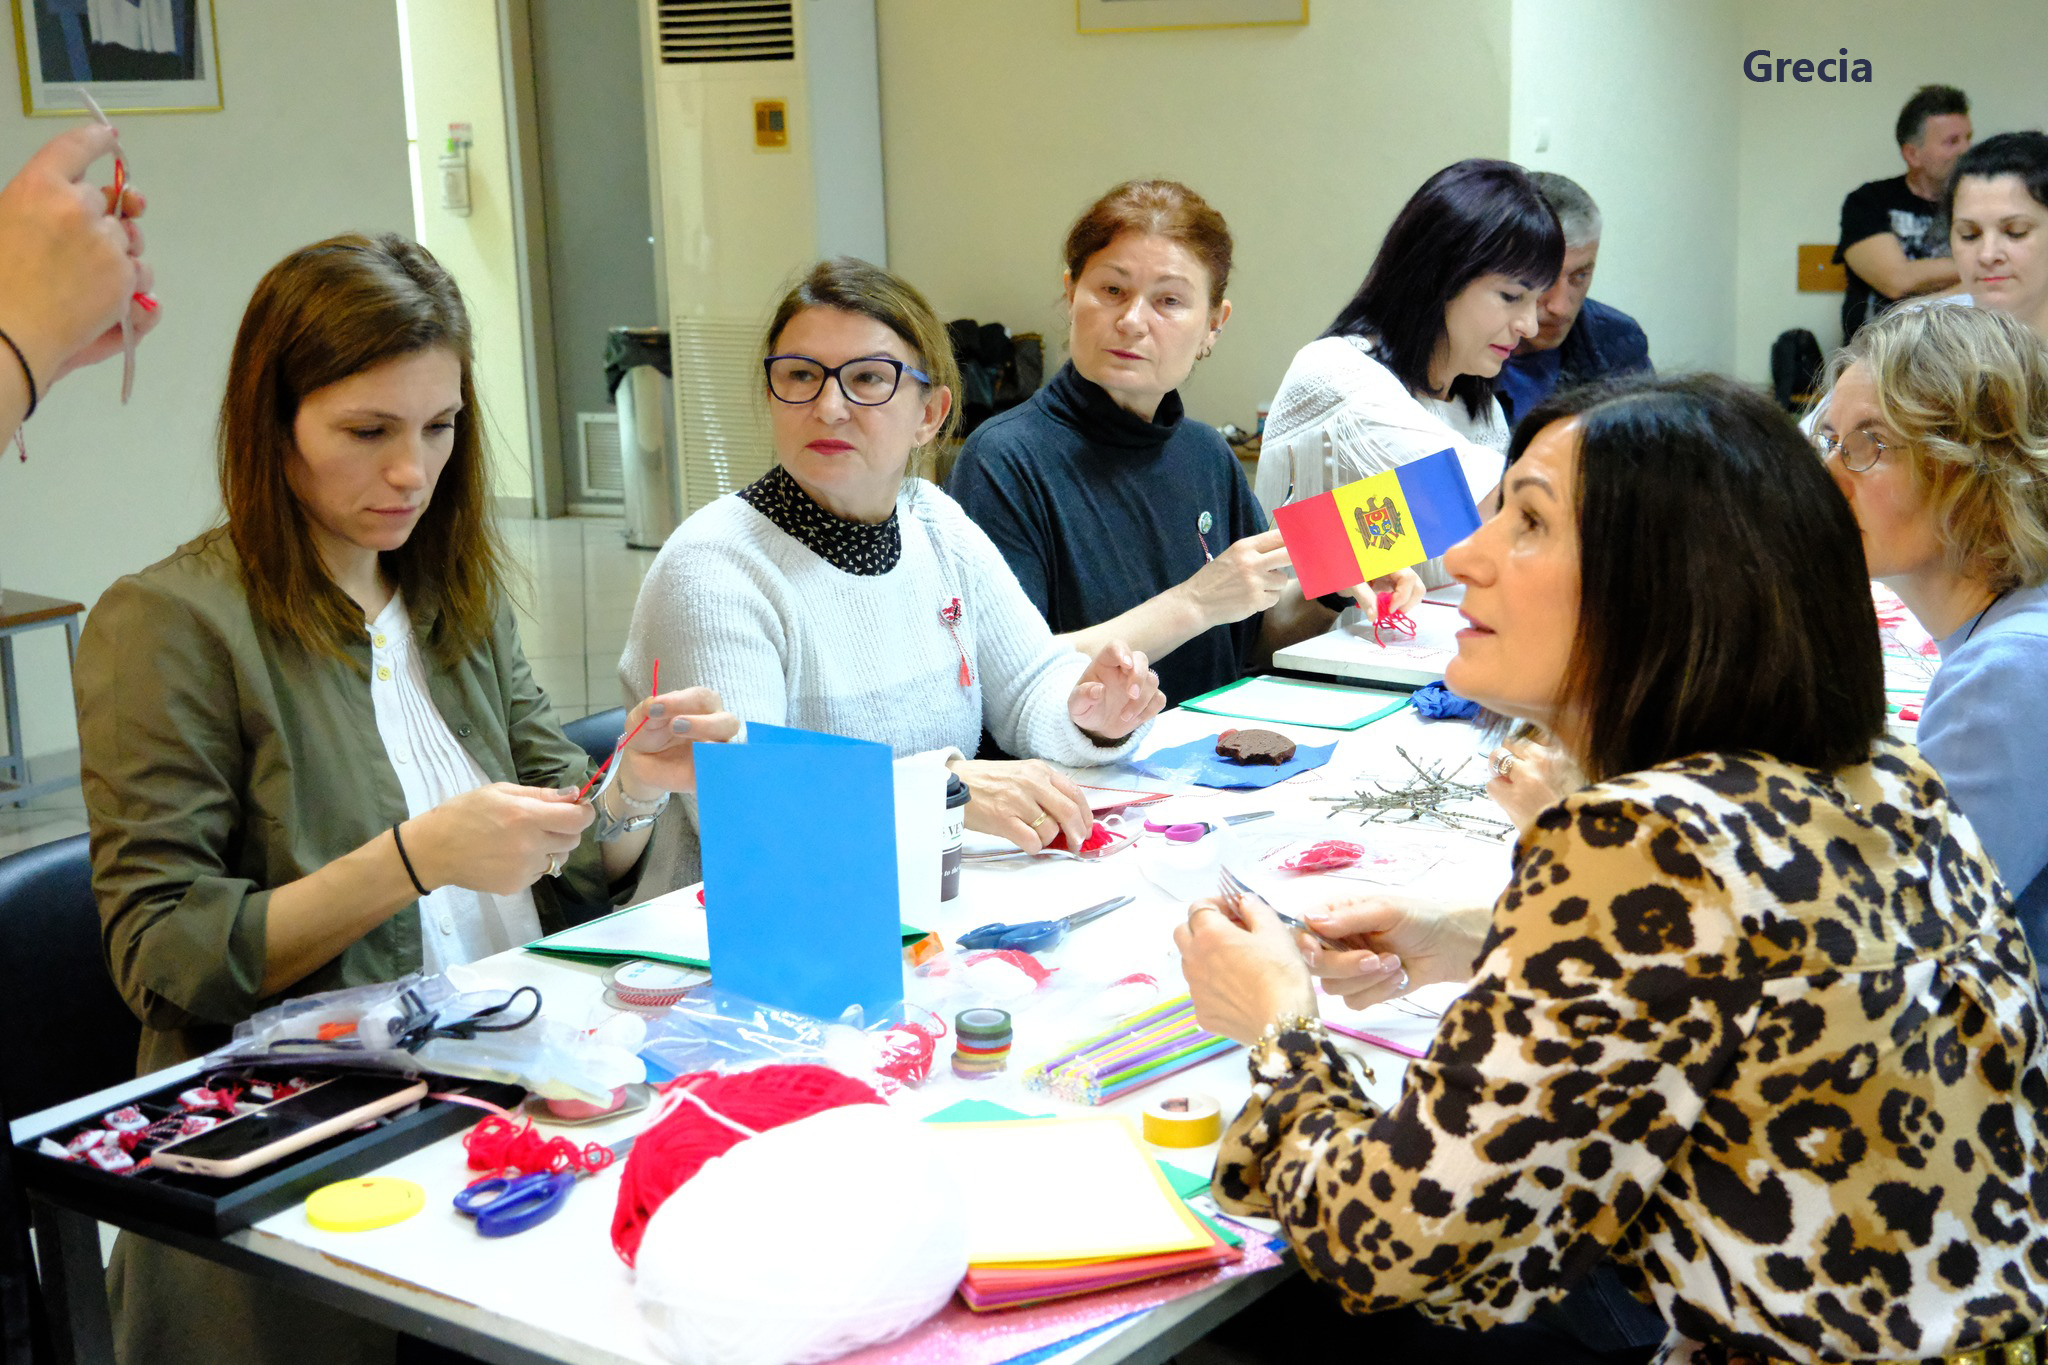 Ateliere de confecționare a mărțișoarelor, desfășurate de către diasporă